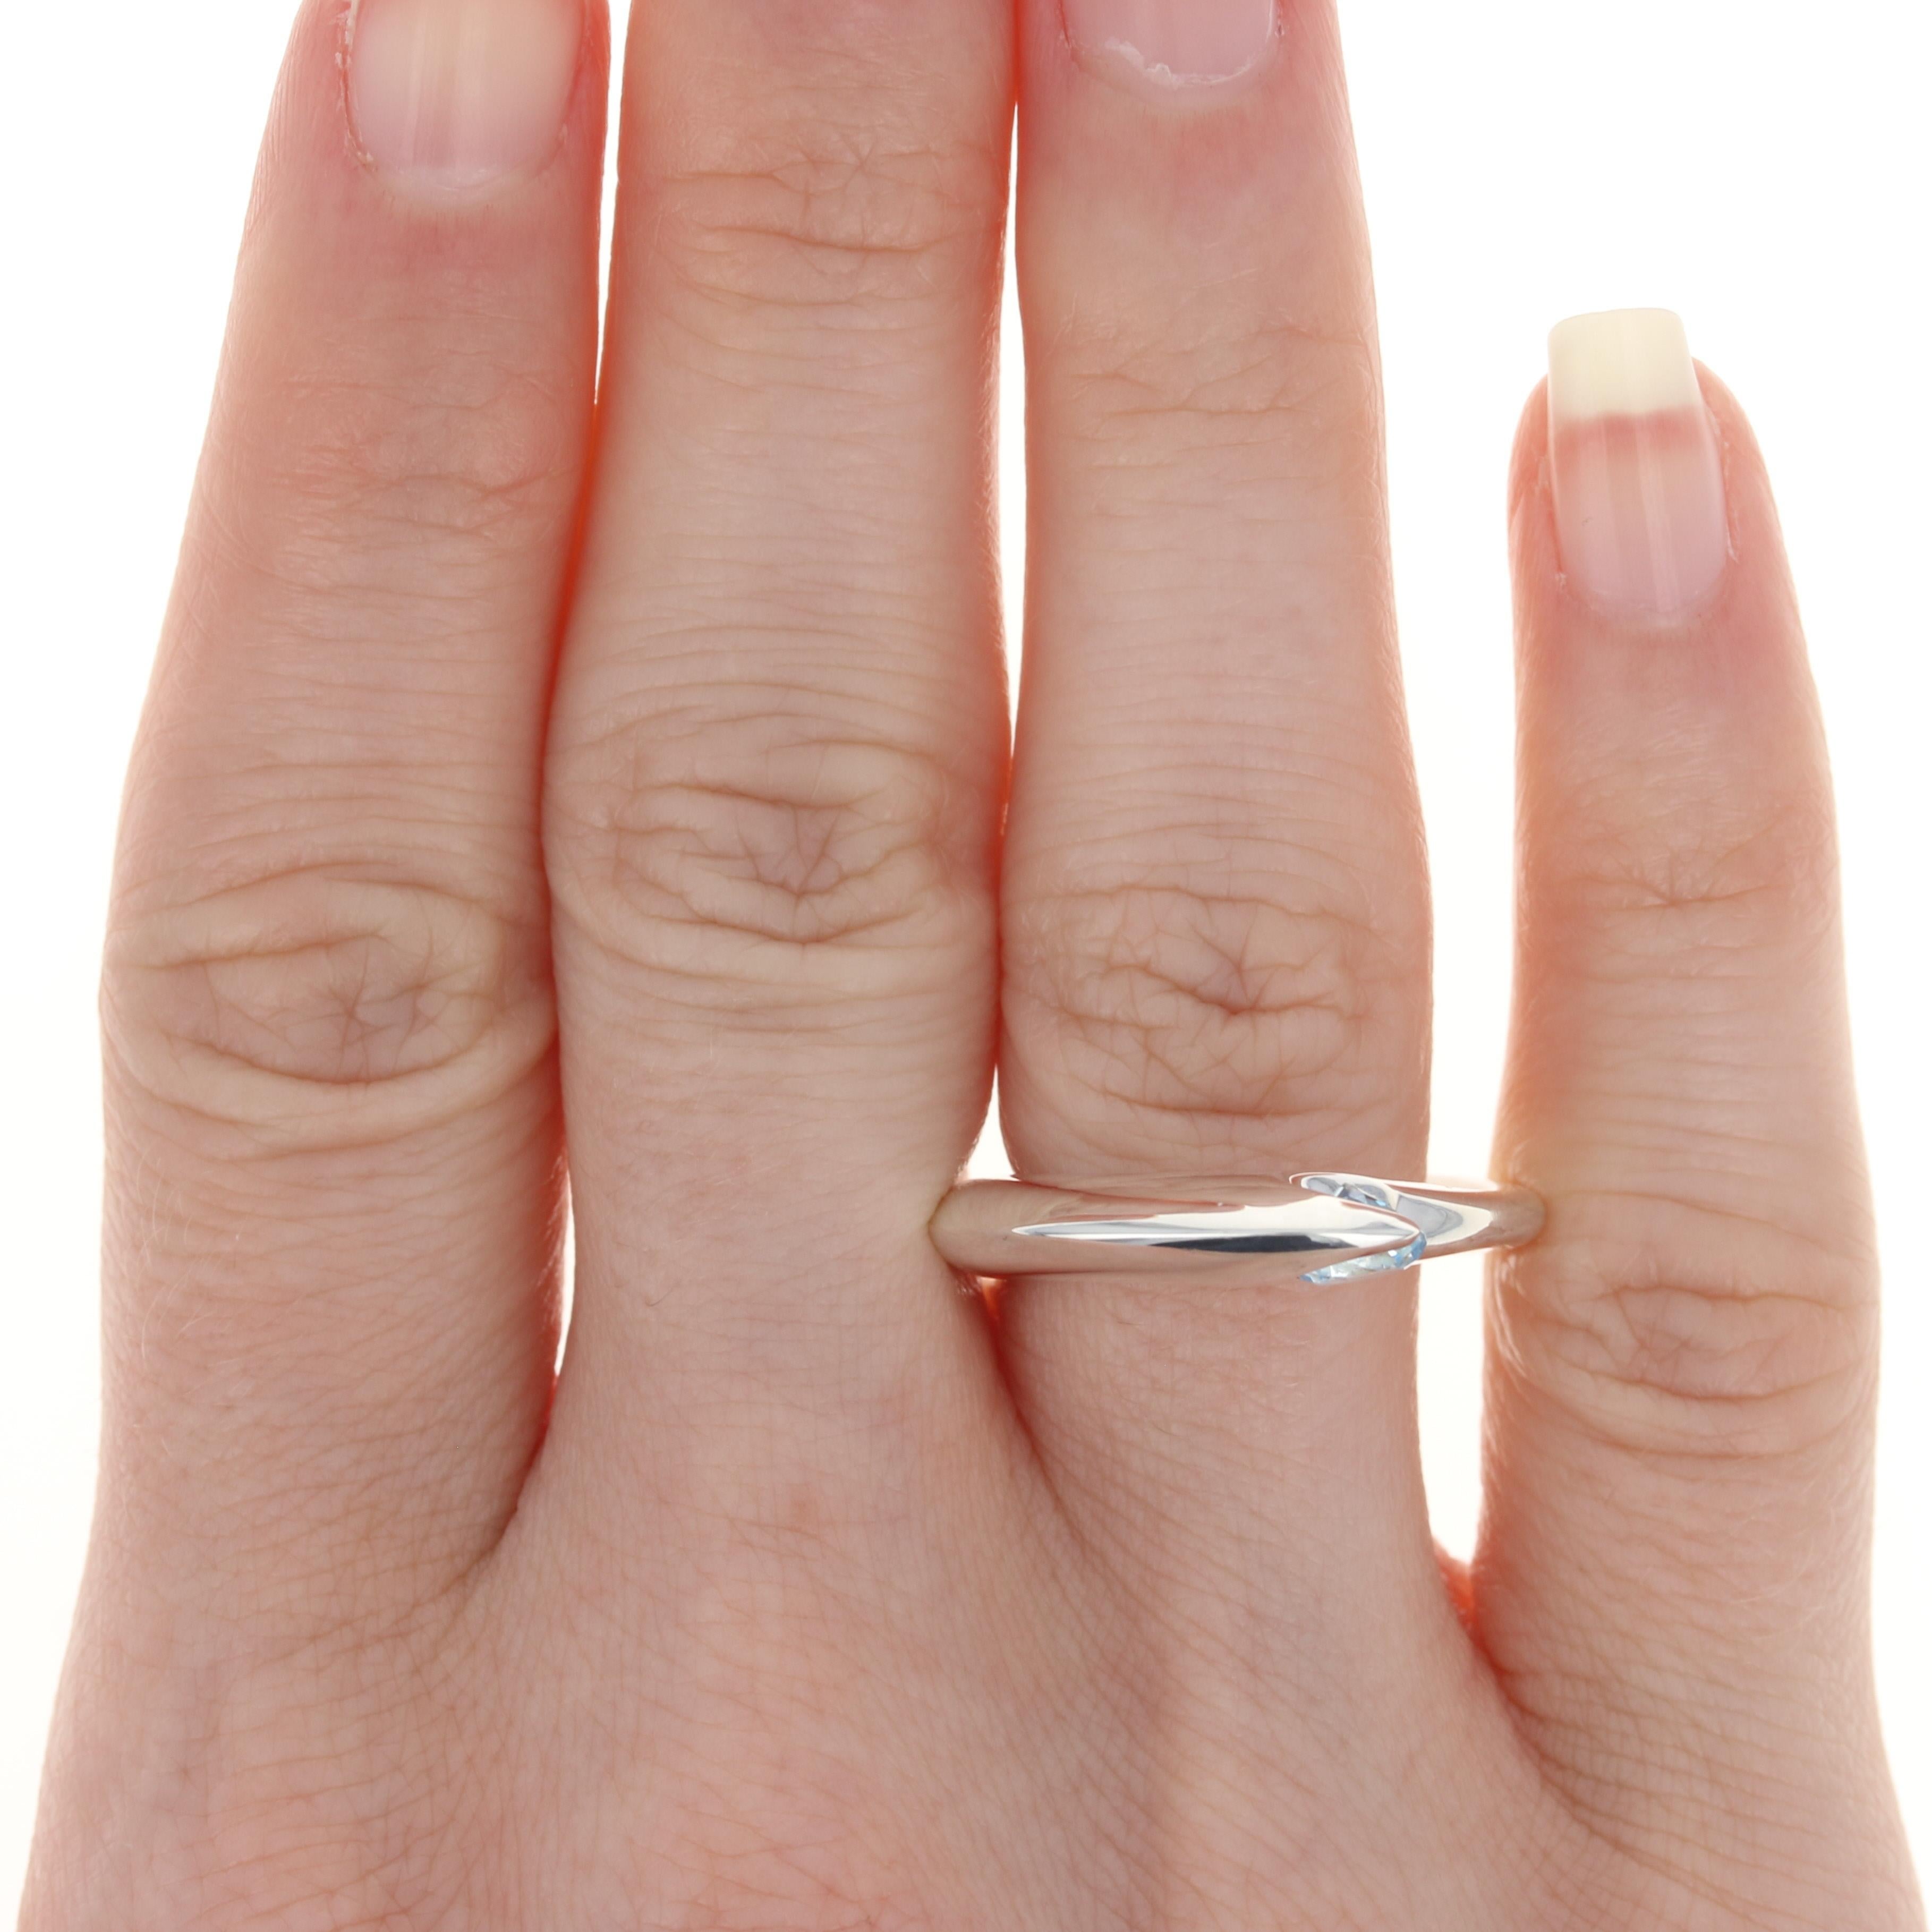 Dieser Ring kostet $200

Dieser Ring ist eine Größe 7 1/2. Bitte kontaktieren Sie uns für weitere Größenoptionen.

Metallgehalt: Sterling Silber
Ausführung: Poliert

Informationen zum Stein:
Echter Topas - 
Behandlung: Routinemäßig verbessert
Farbe: